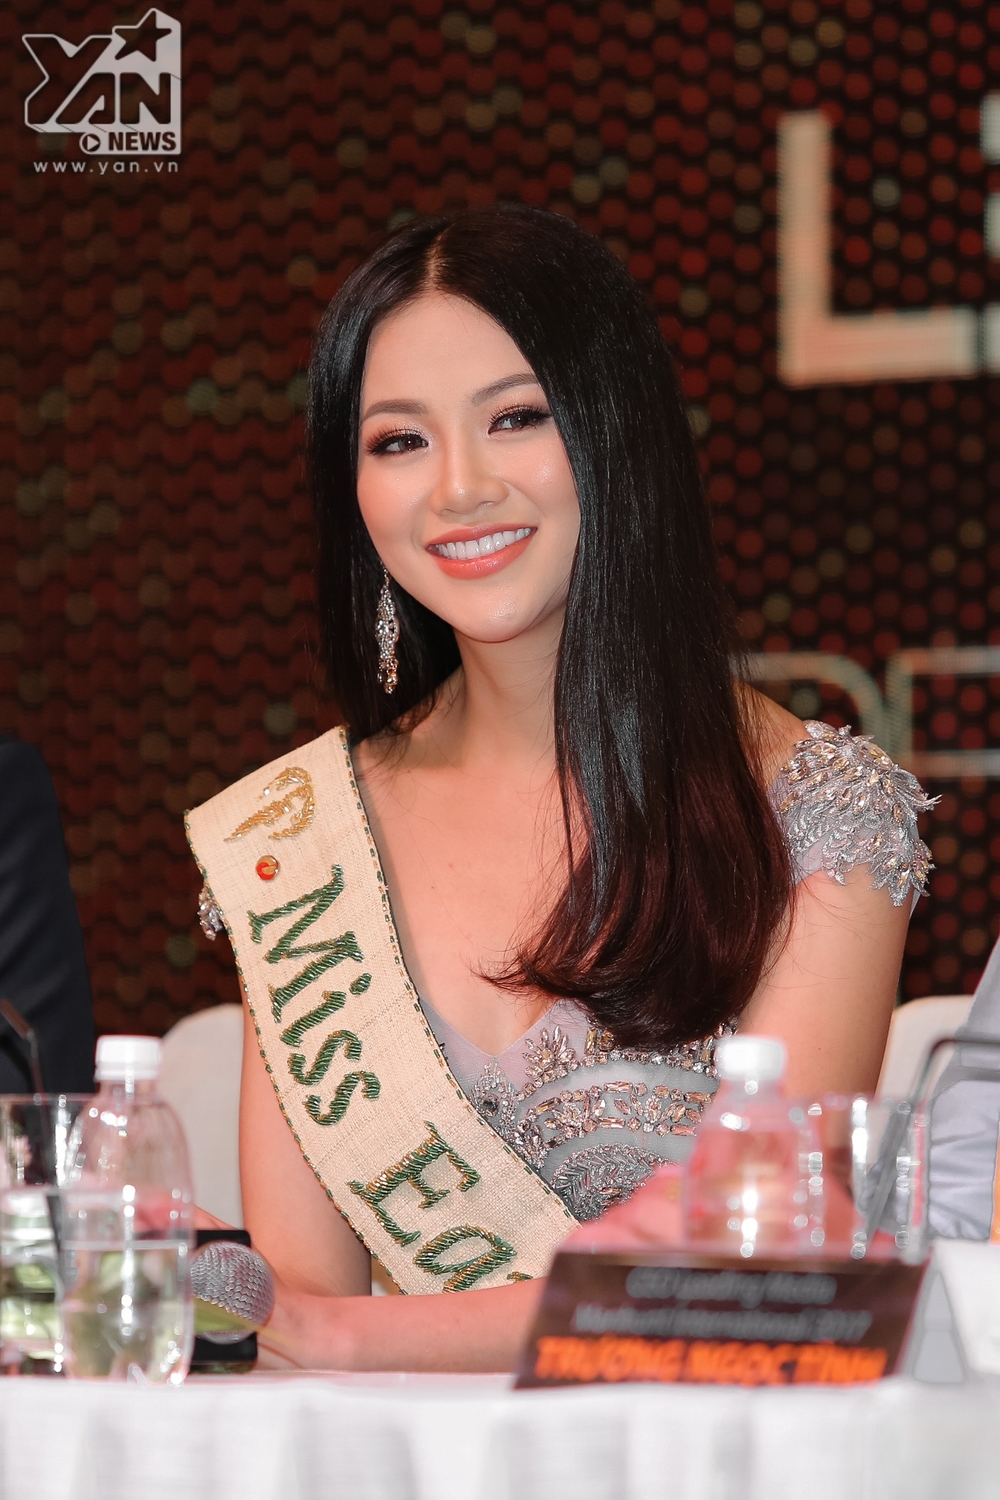 Không còn giấu giếm, Hoa hậu Trái đất 2018 Phương Khánh xác nhận có chỉnh một số nét trên mặt - Tin sao Viet - Tin tuc sao Viet - Scandal sao Viet - Tin tuc cua Sao - Tin cua Sao